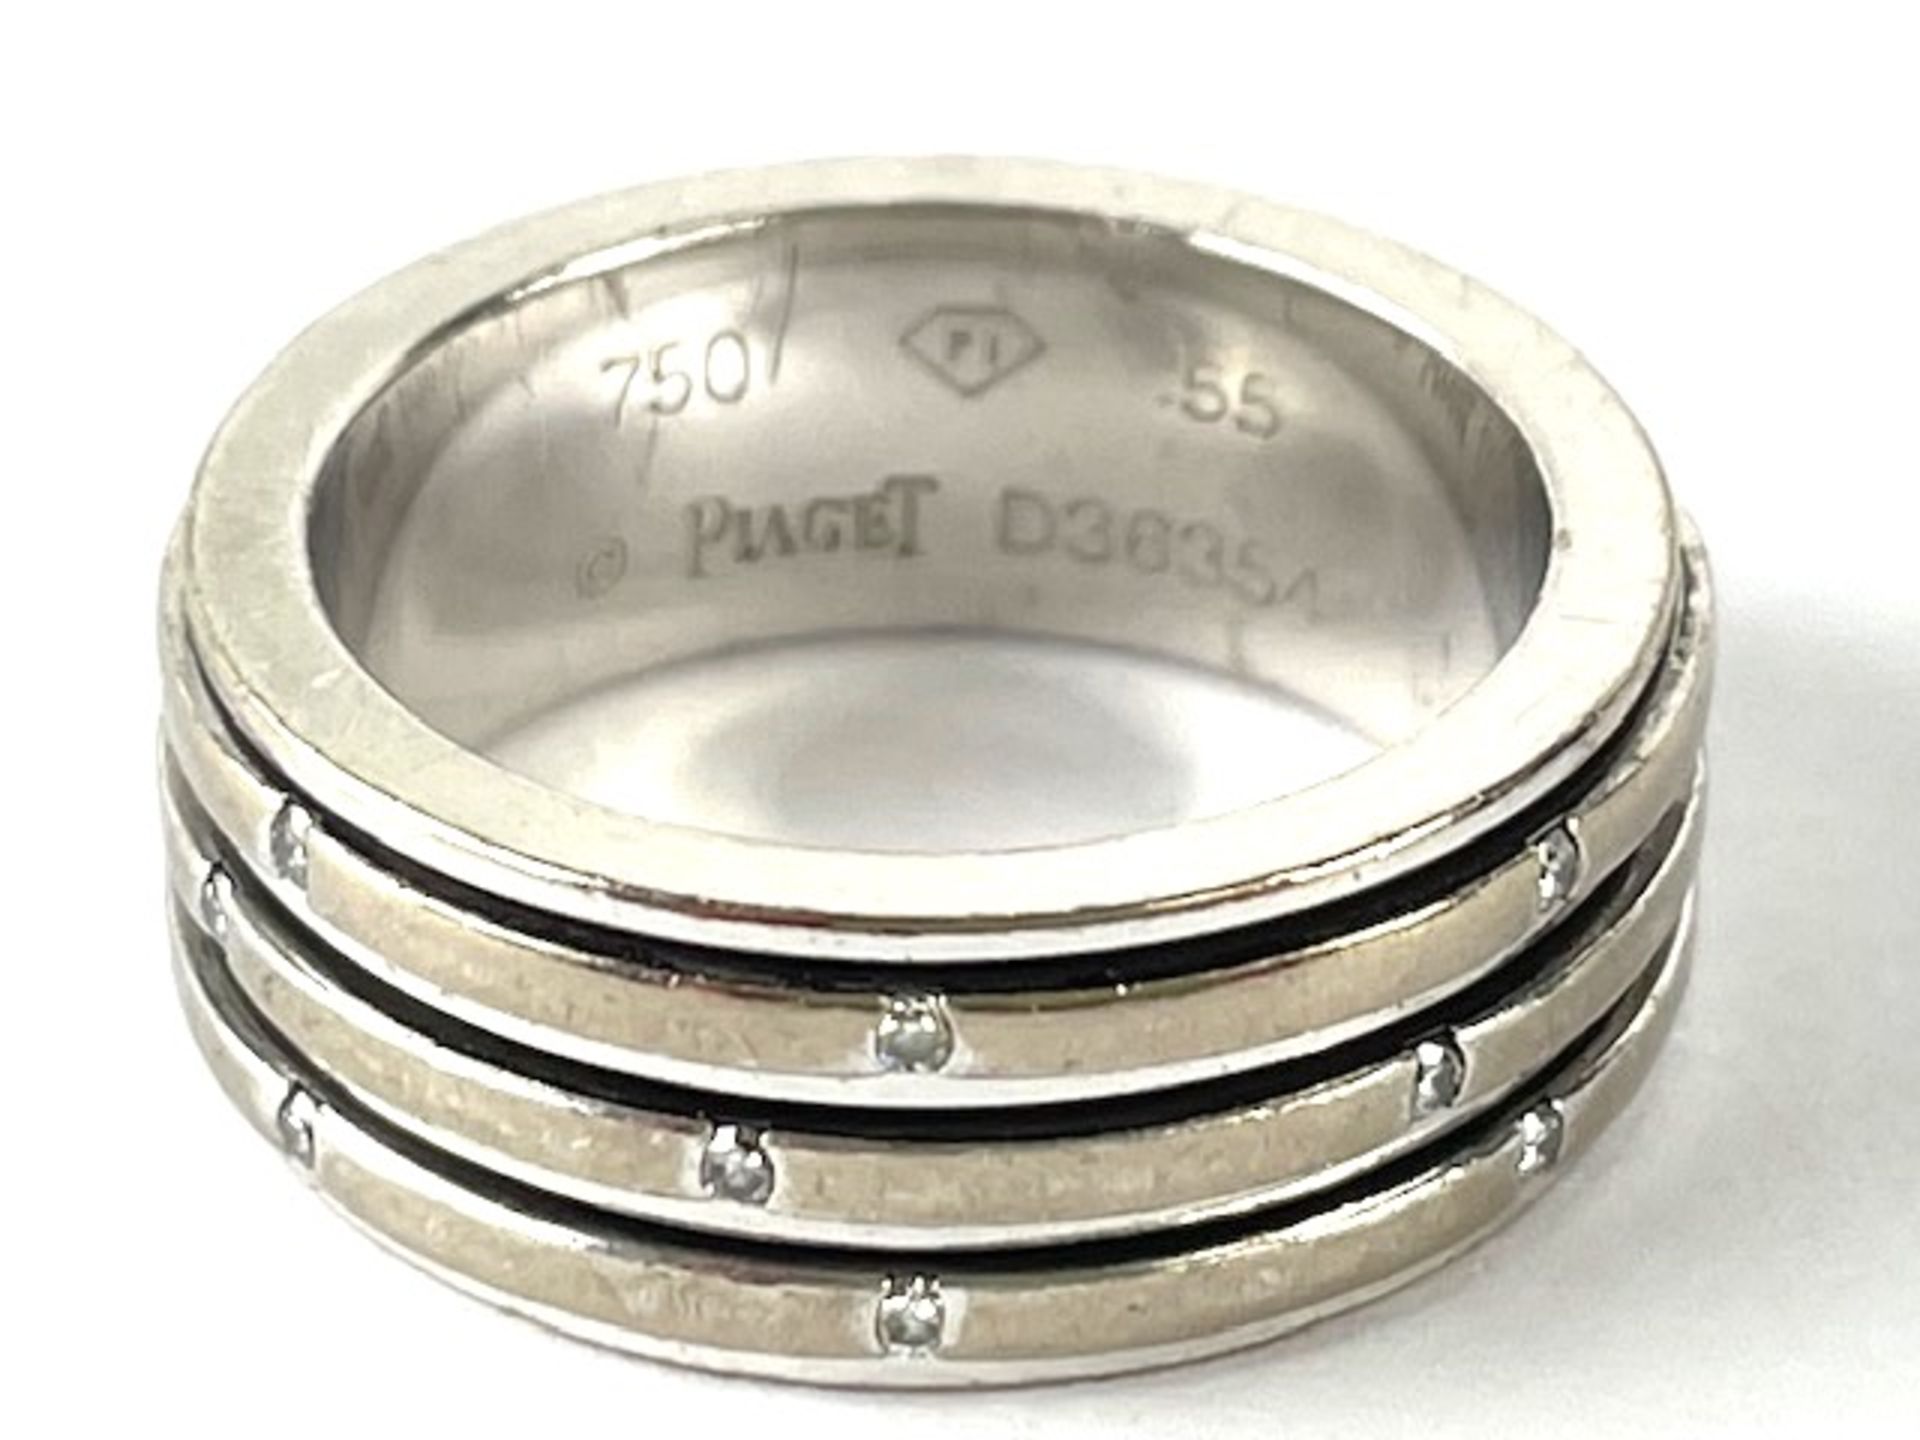 Piaget ring - Image 2 of 4